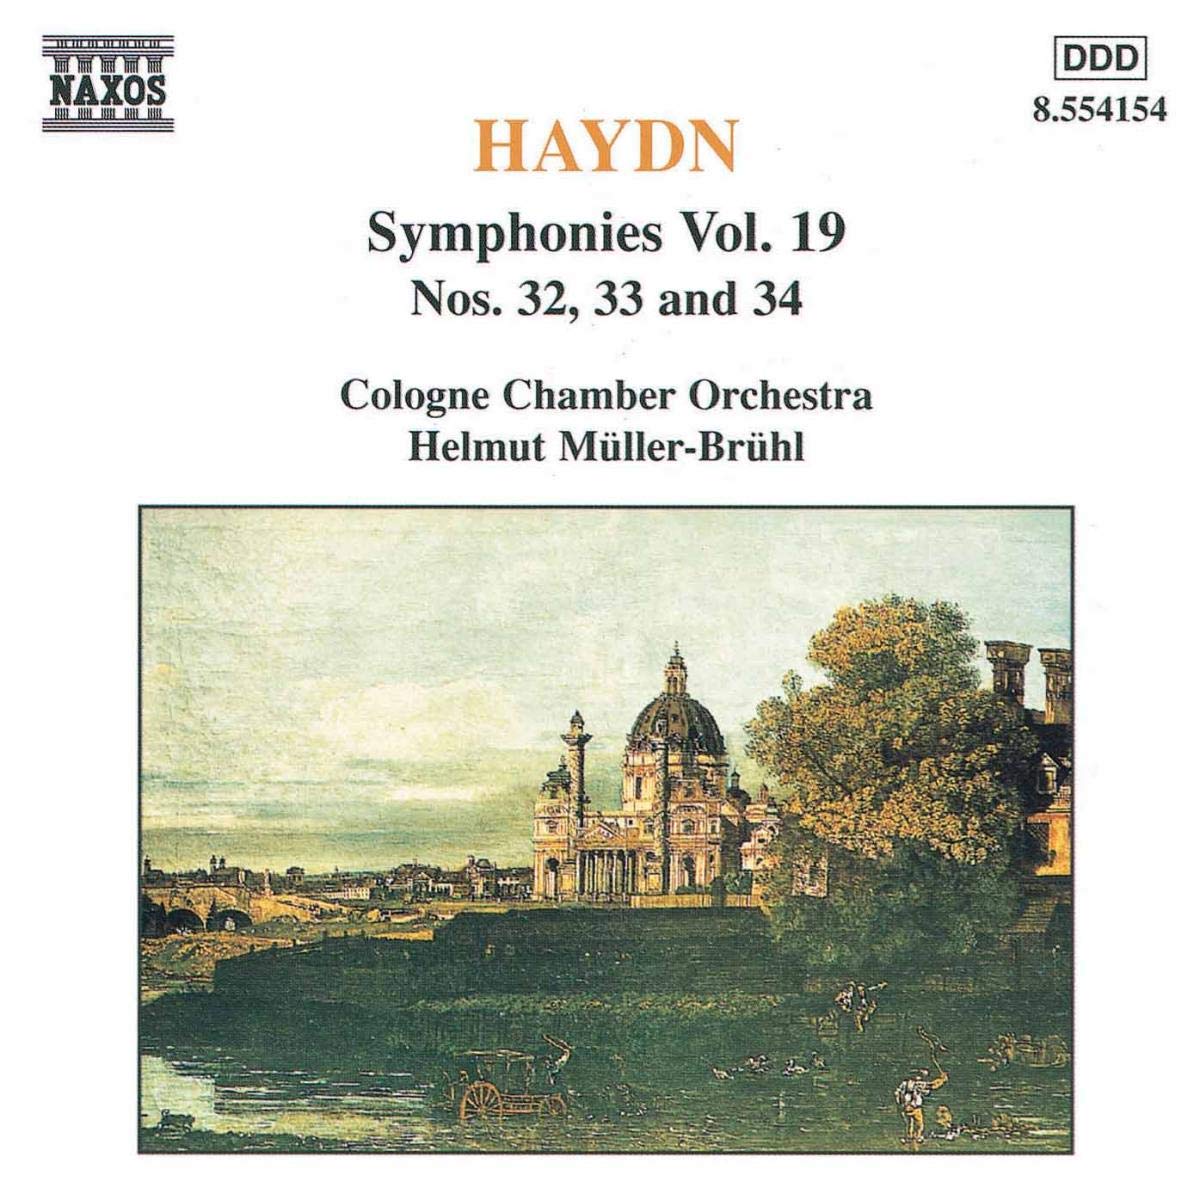 HAYDN: Symphonies nos. 32, 33